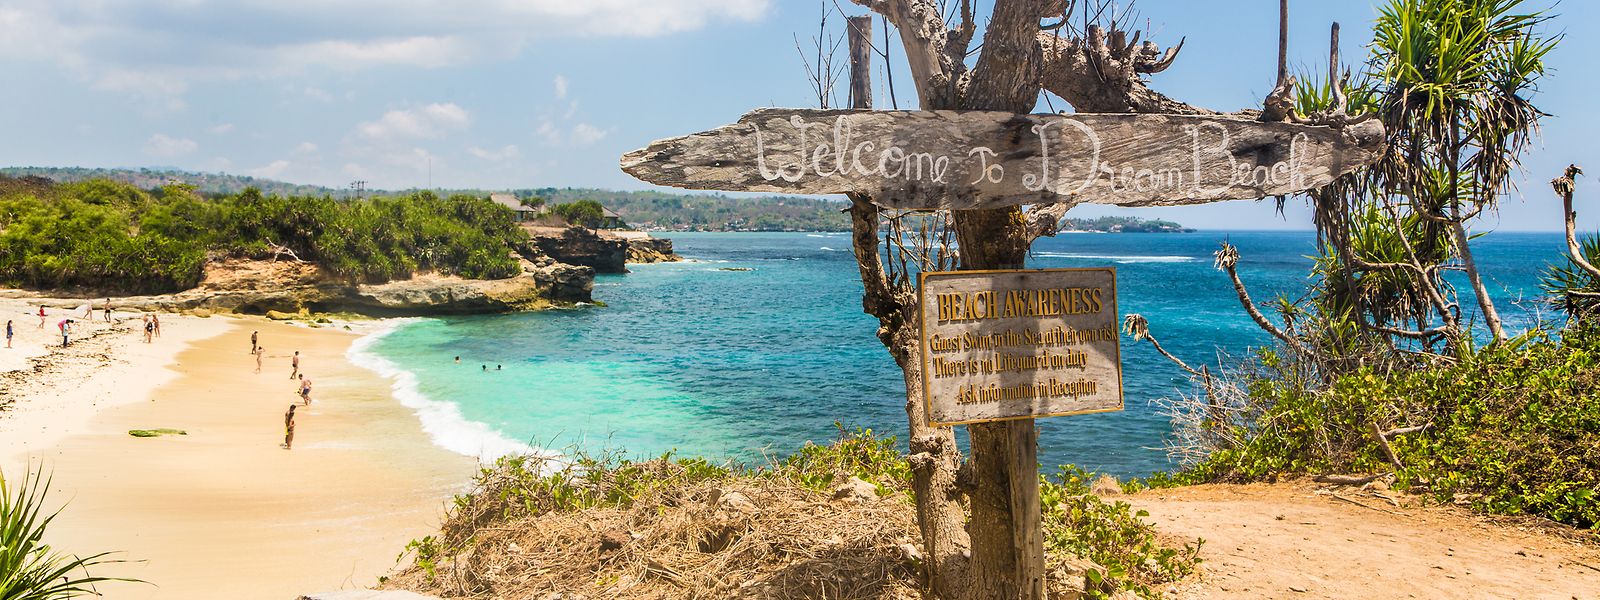 Les plages paradisiaques de l'île indonésienne de Bali seront accessibles pendant trois semaines aux joueurs sélectionnés. 